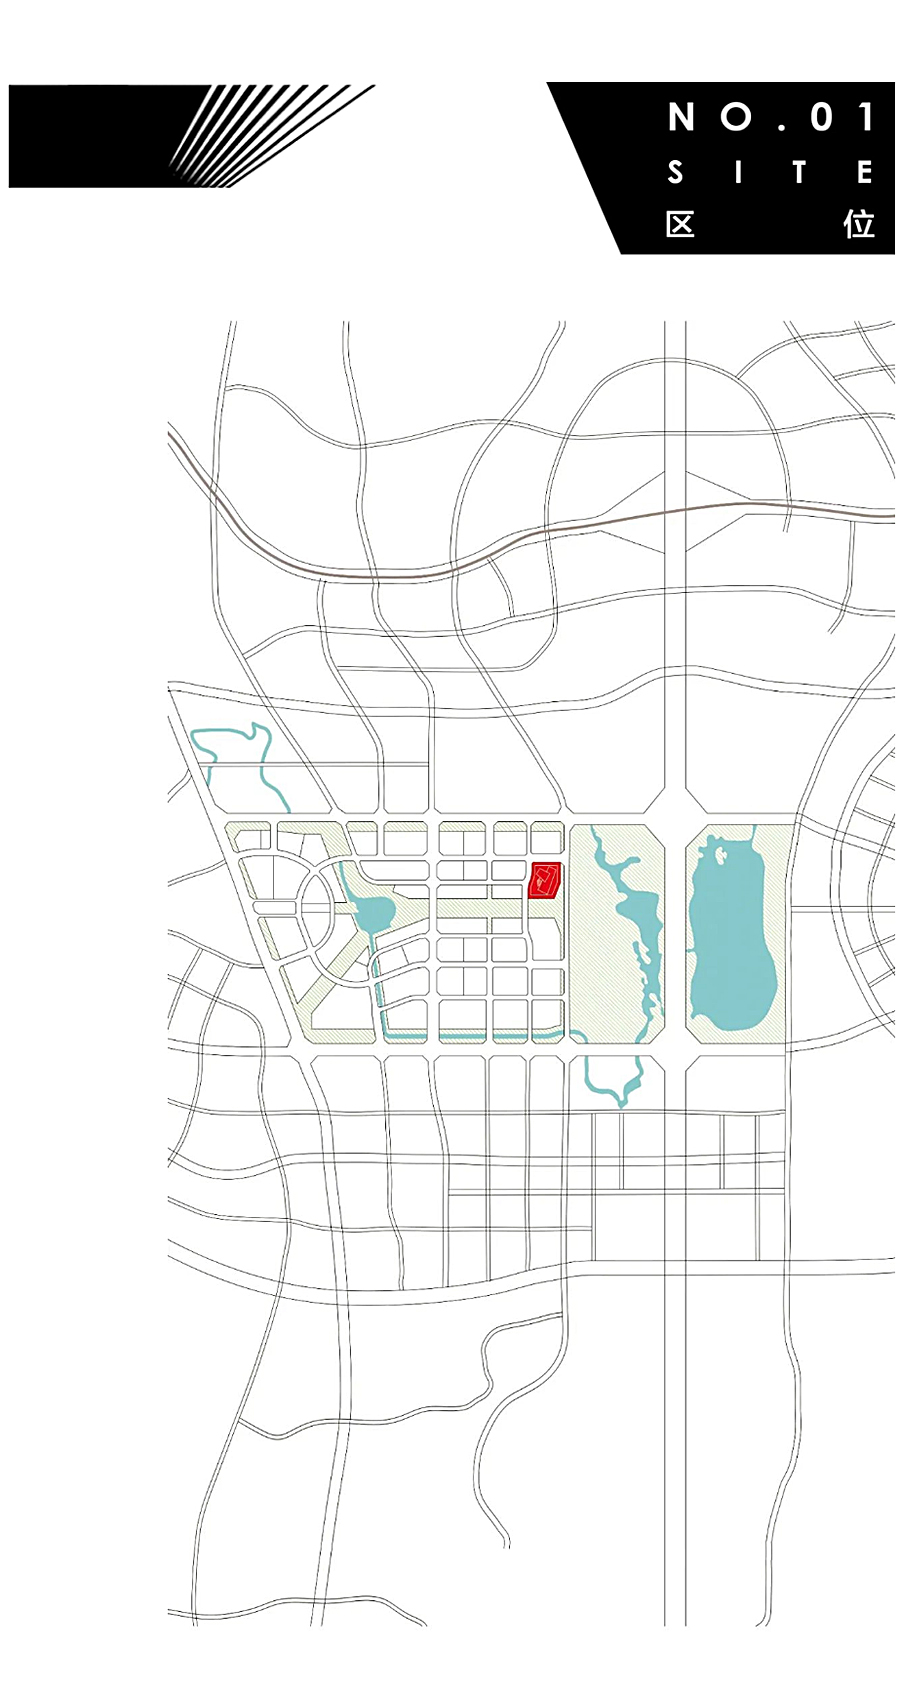 一个建筑代表一座新城-_-成都招商天府新区城市规划展示馆_0006_图层-7.jpg